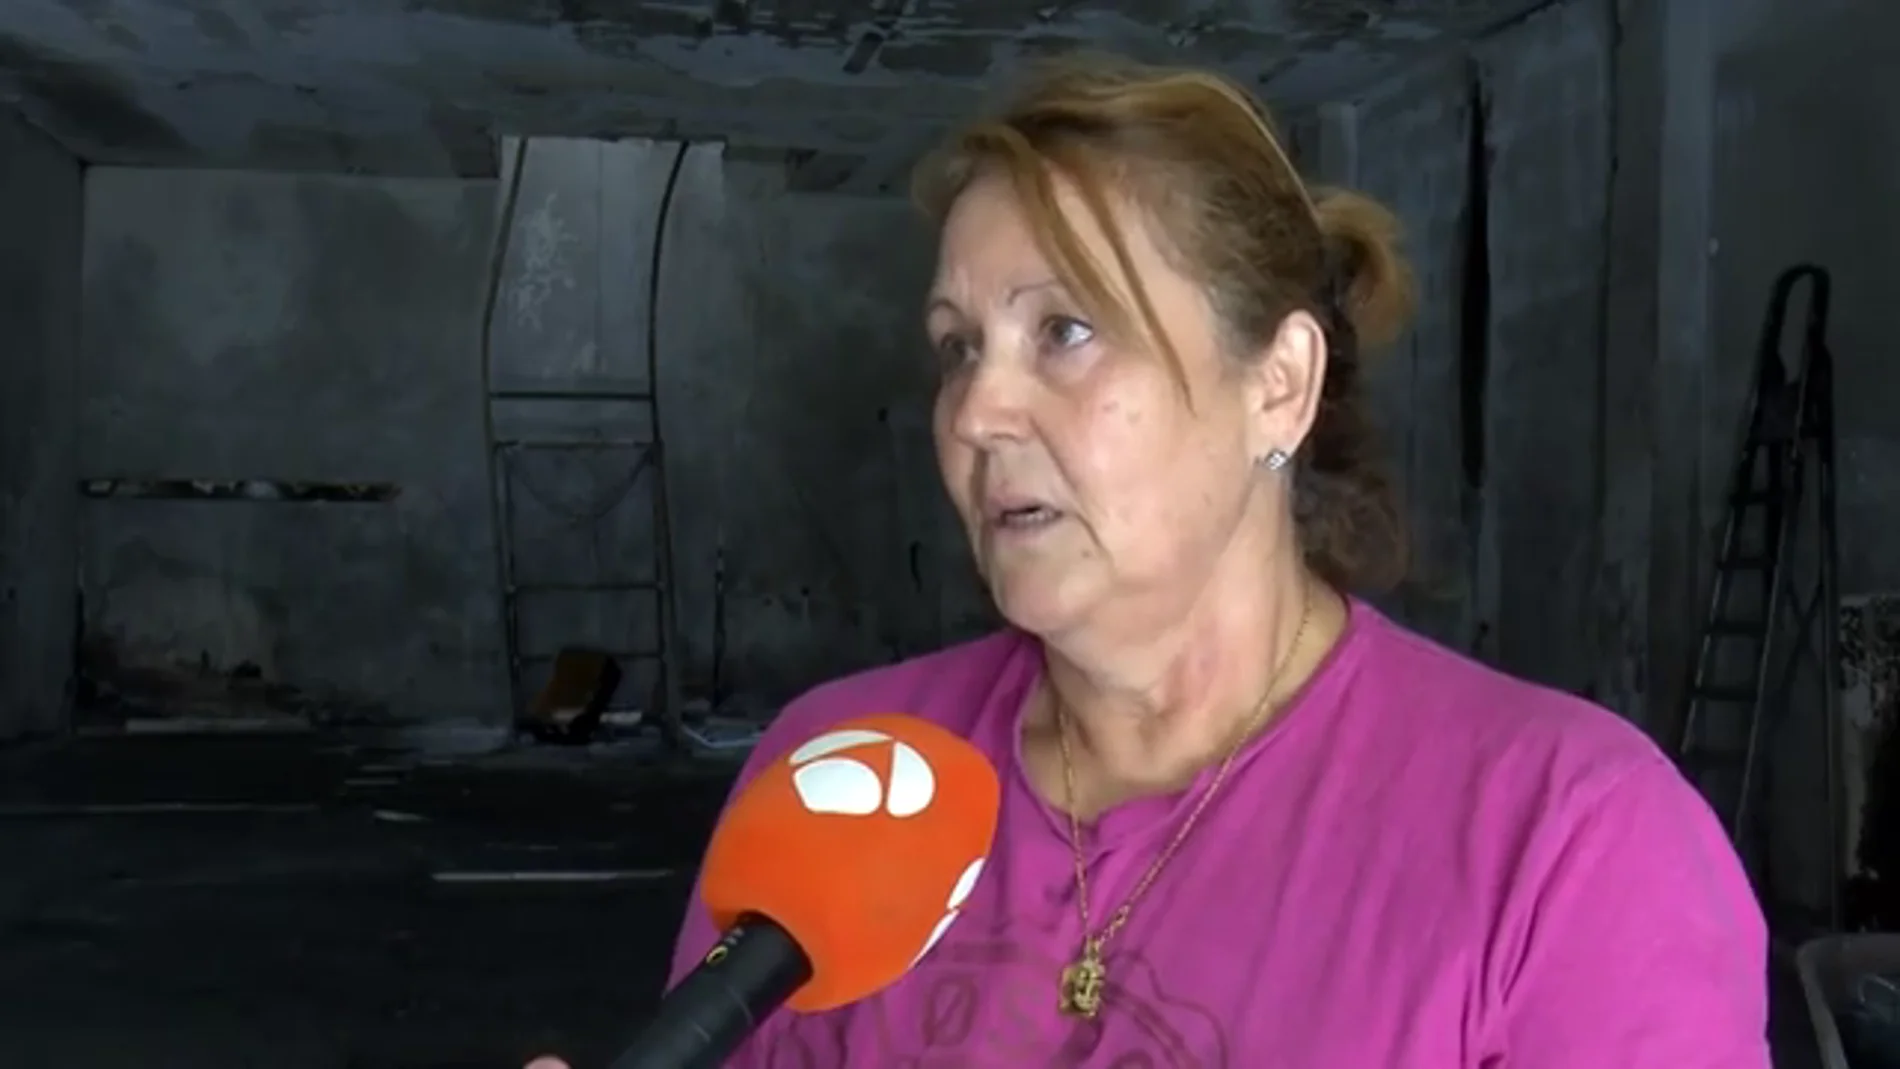 Una mujer sobrevive al incendio que provocó su exmarido en su vivienda de Gran Canaria: "Él se achicharró"